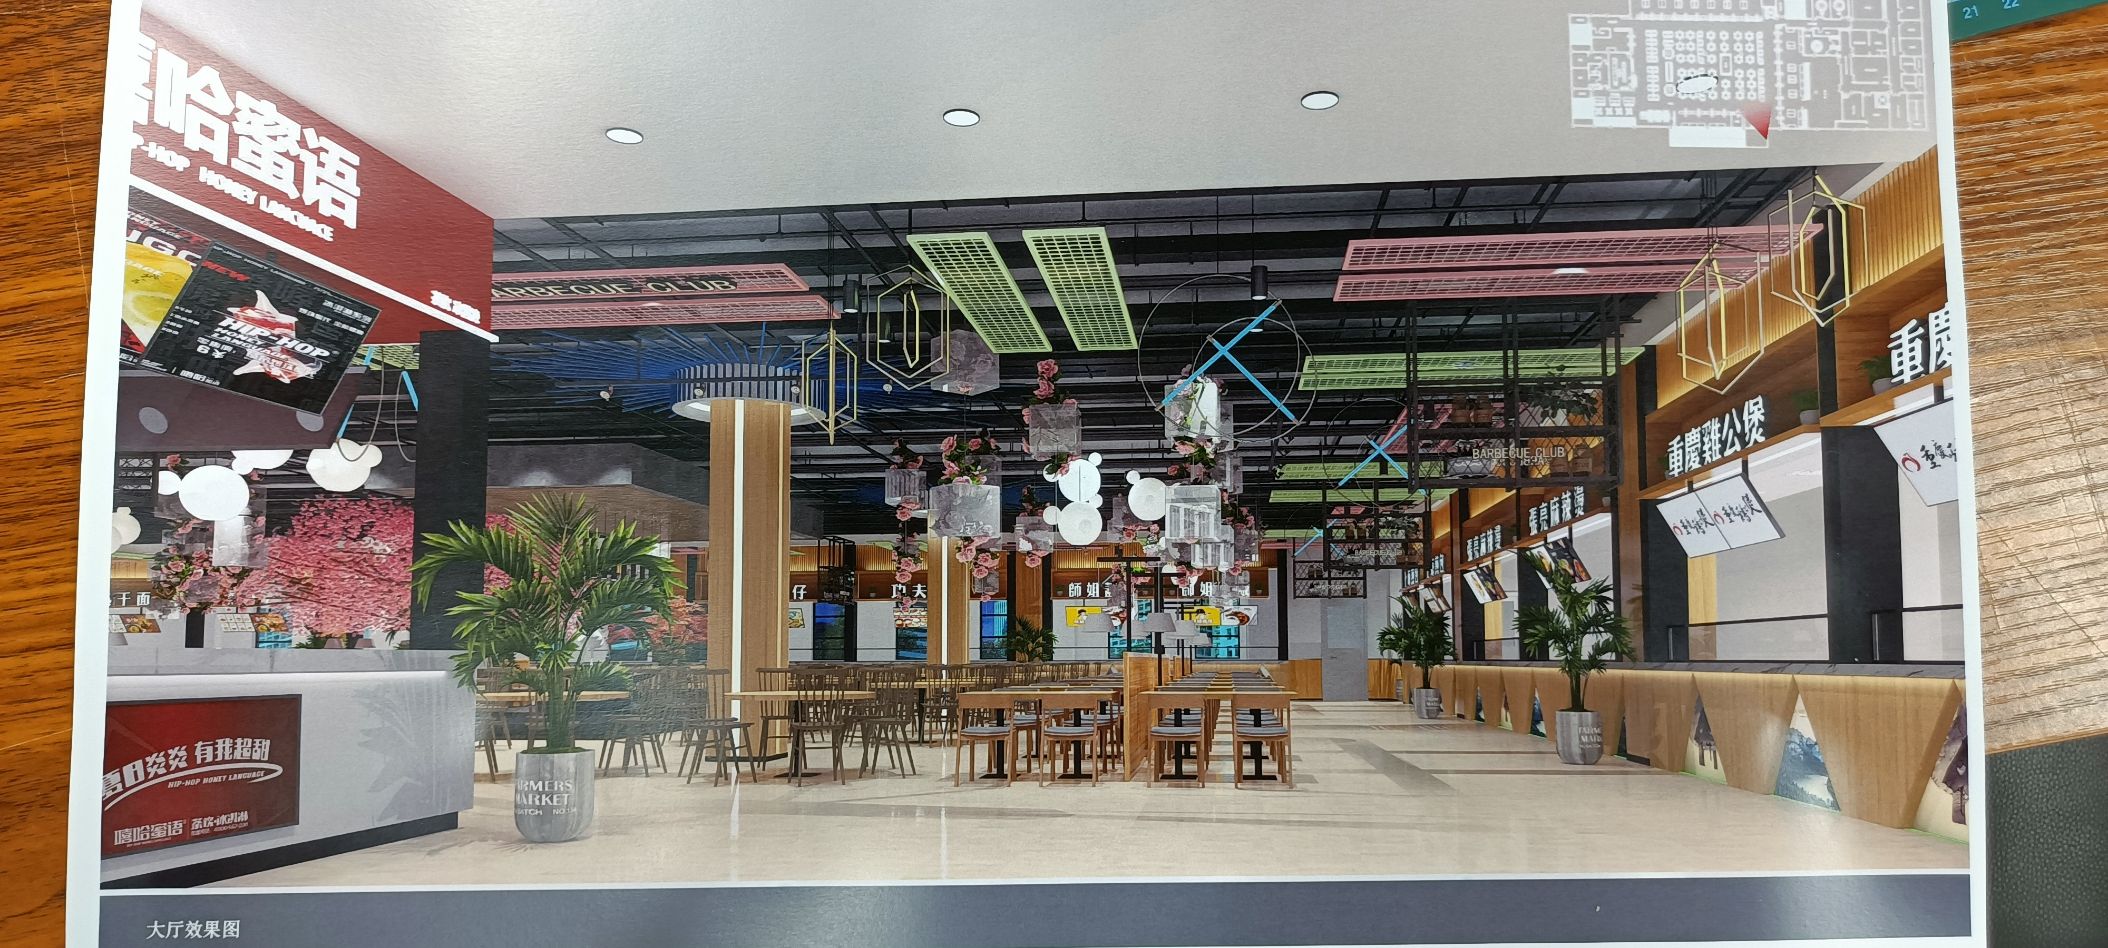 海南地区两万人高校新建餐厅隆重招商